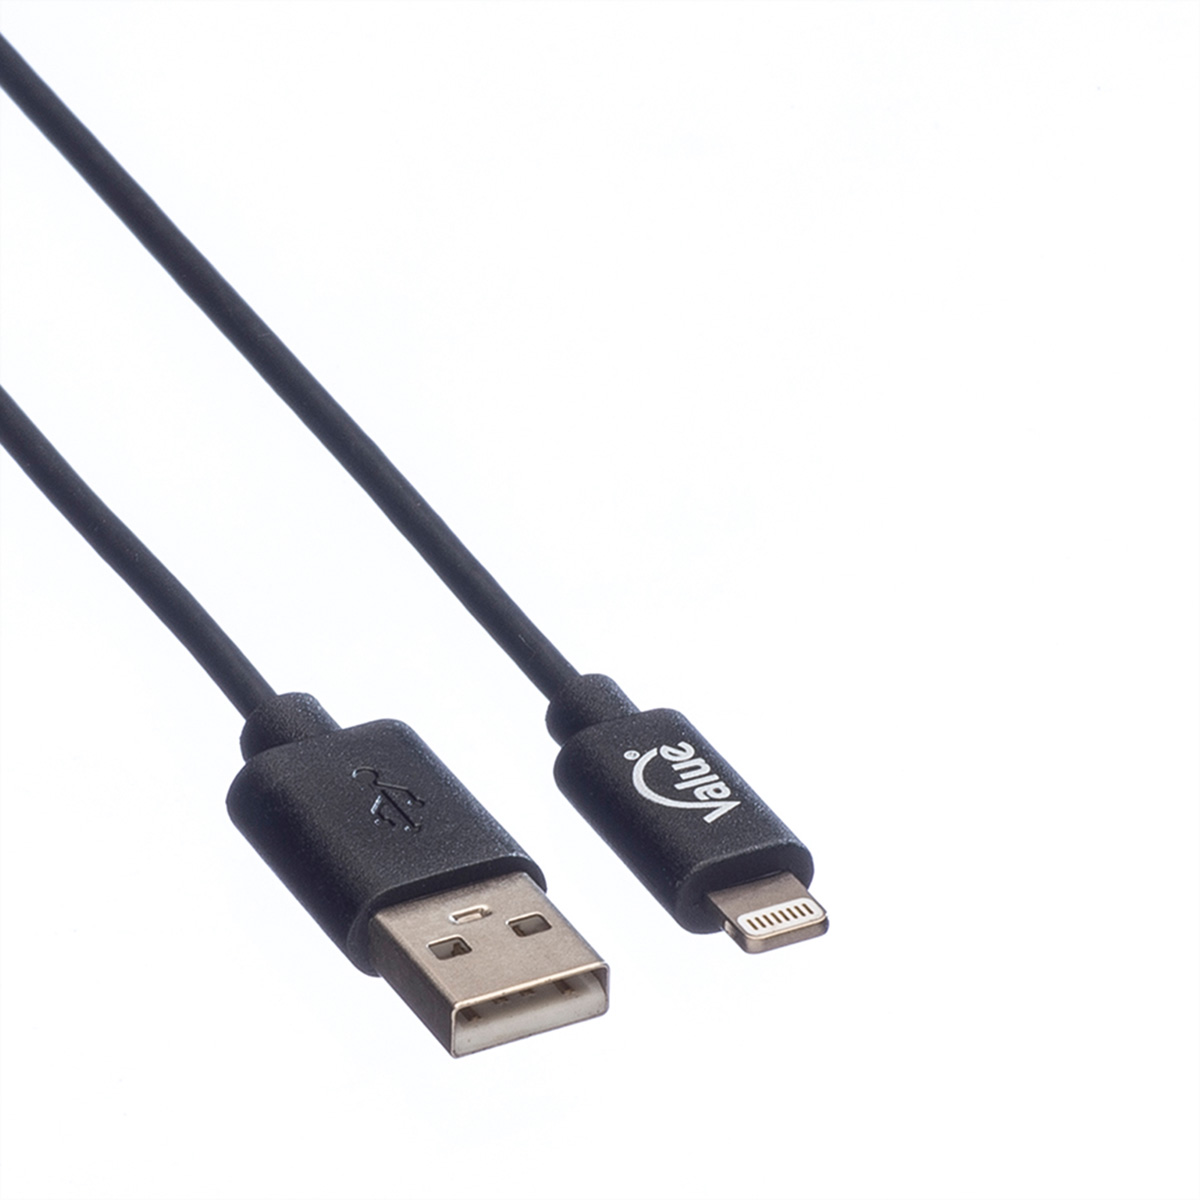 VALUE USB 2.0 Connector Kabel Sync- Ladekabel mit & Lightning Connector Lightning